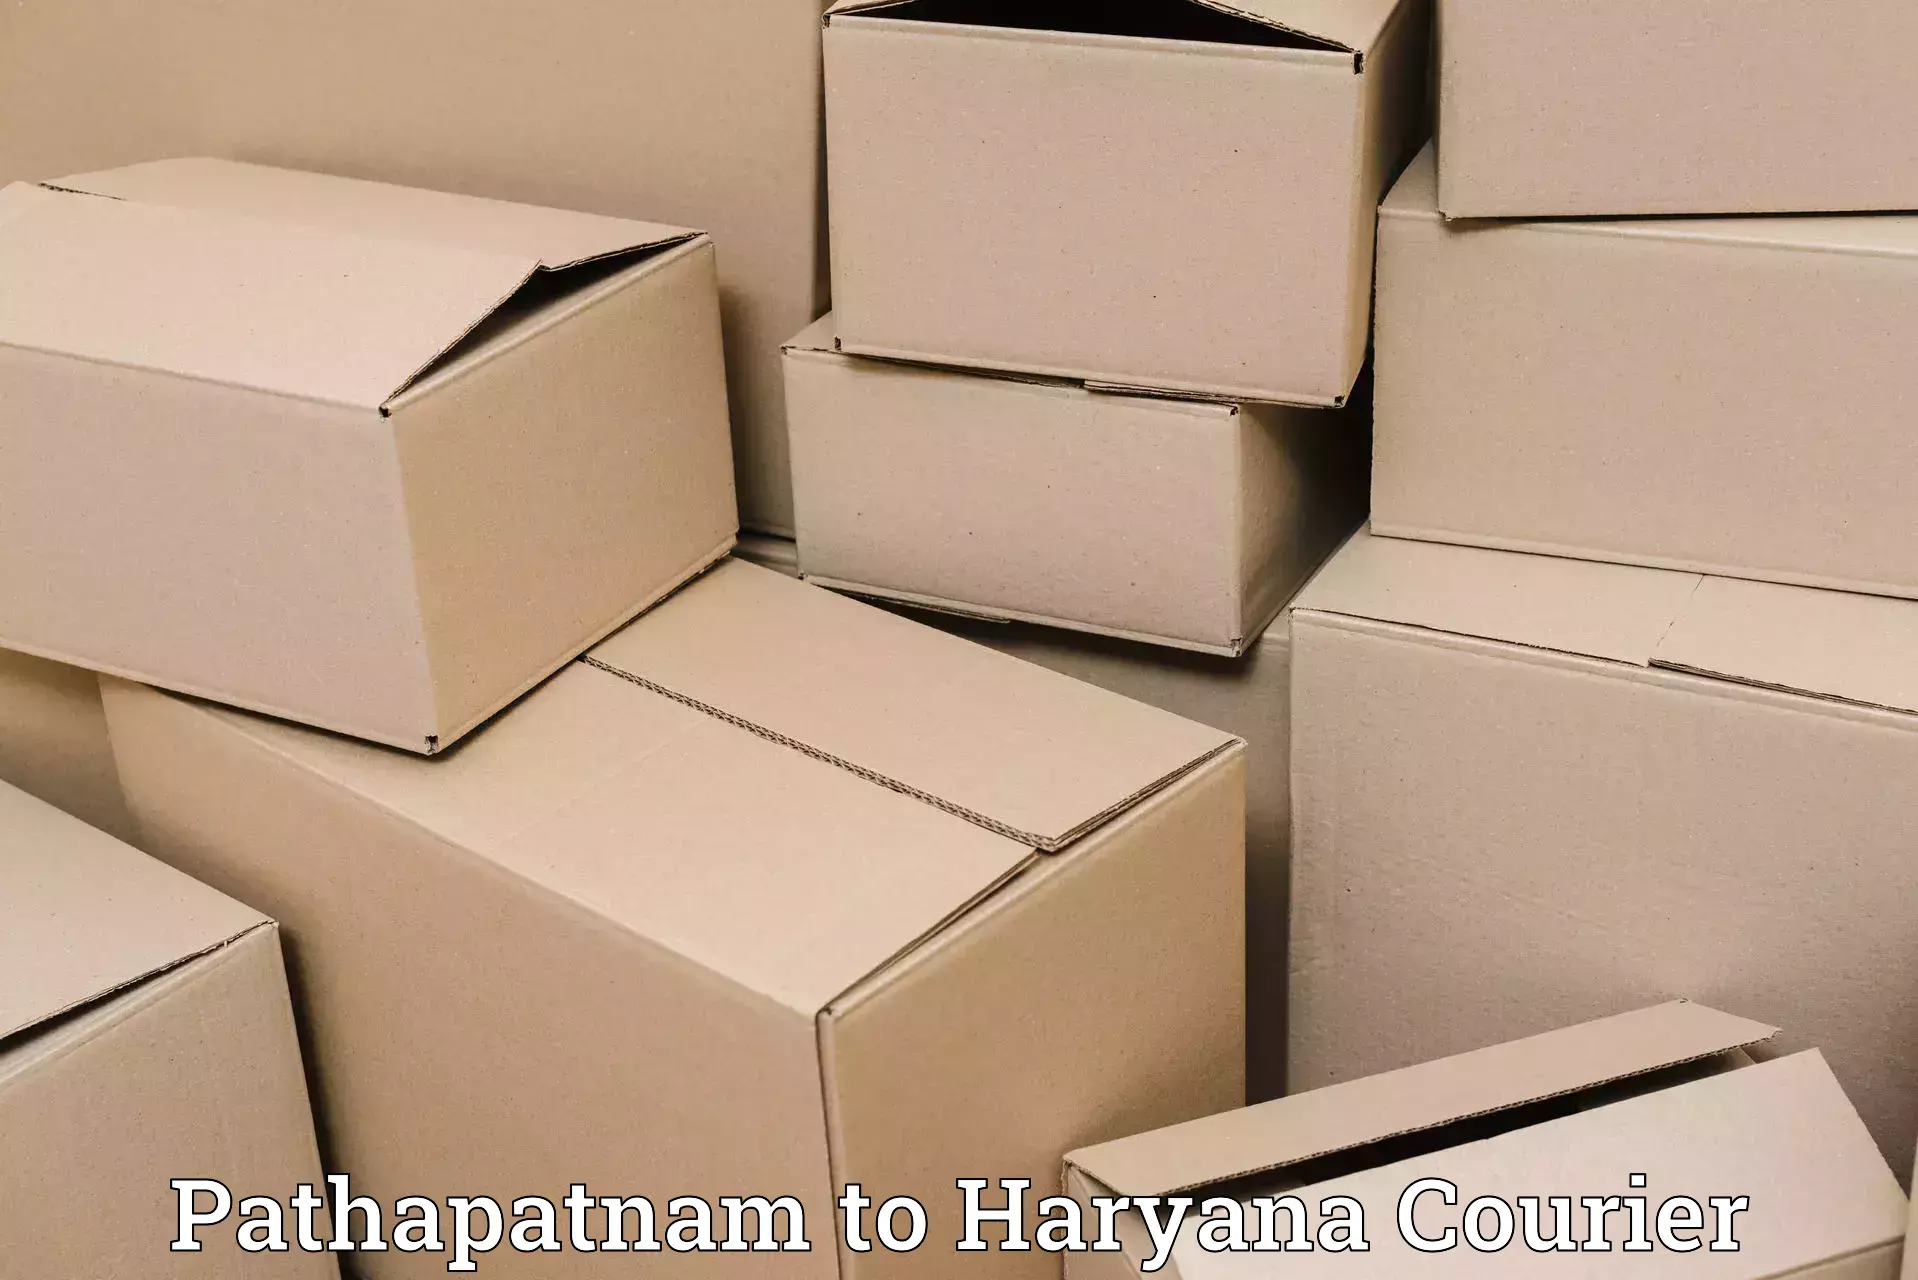 Shipping and handling Pathapatnam to Chaudhary Charan Singh Haryana Agricultural University Hisar